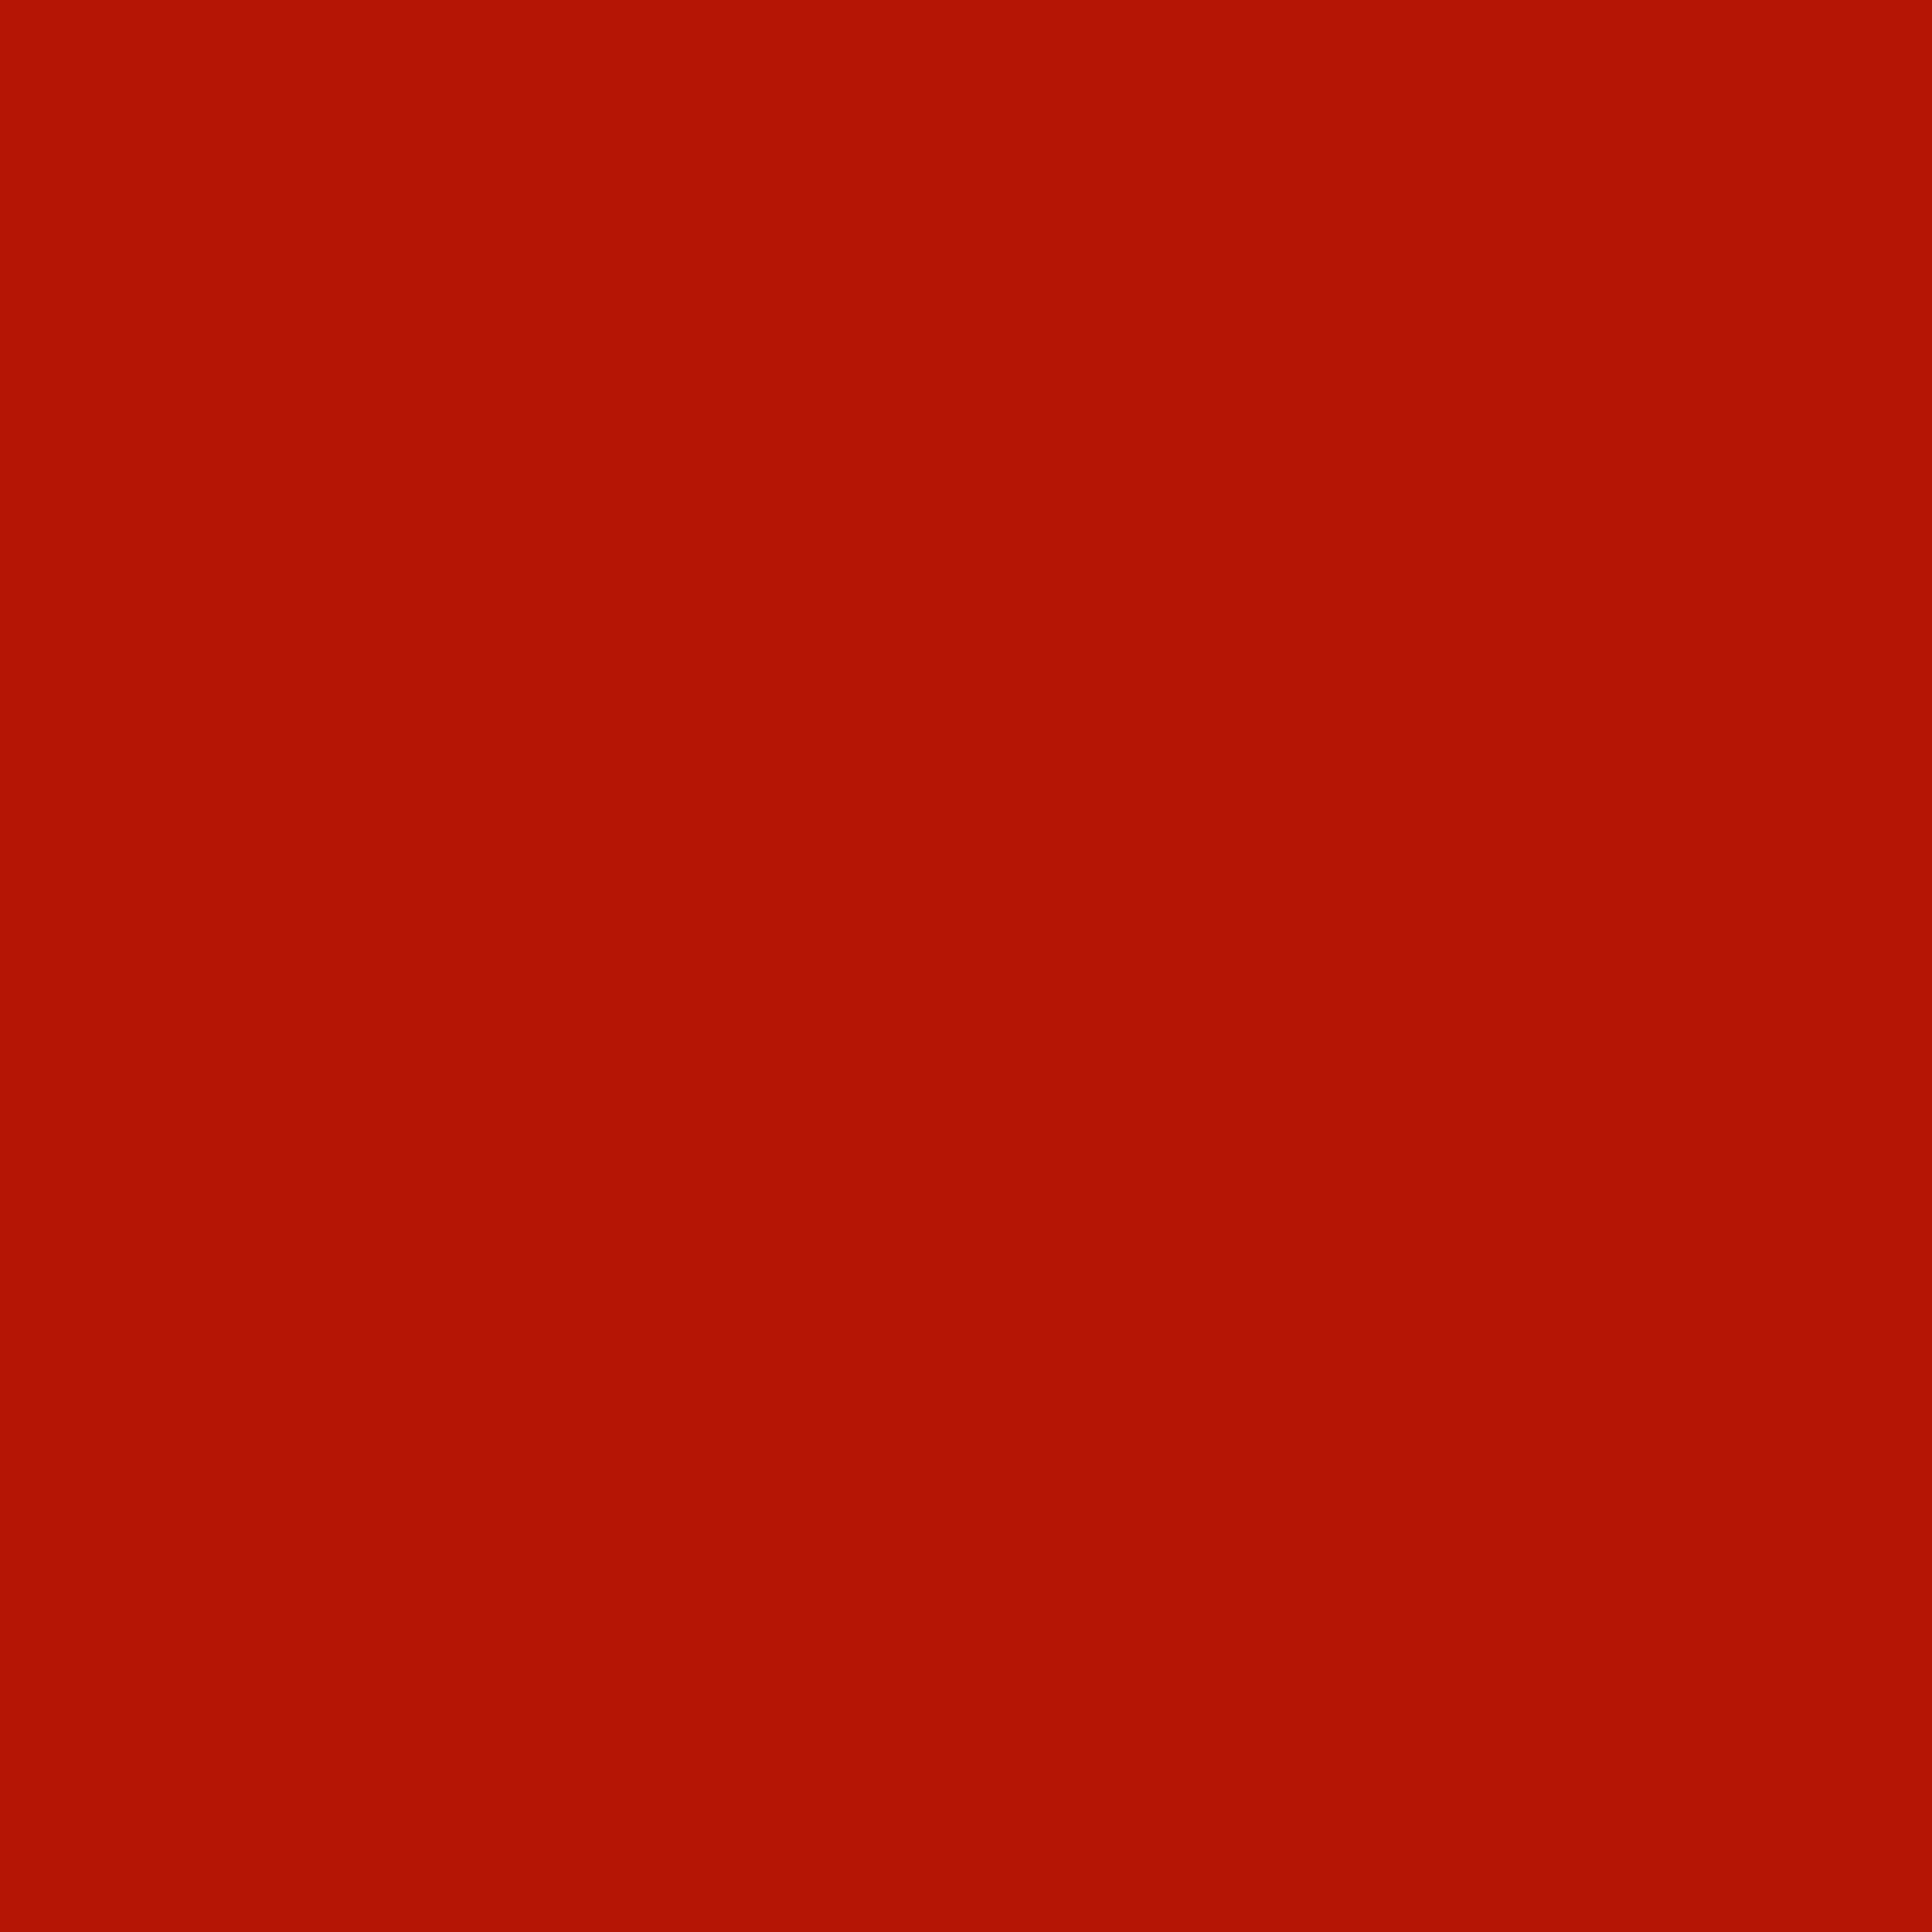 ROSCO E-Colour 026 Bright red 1.22 x 1m